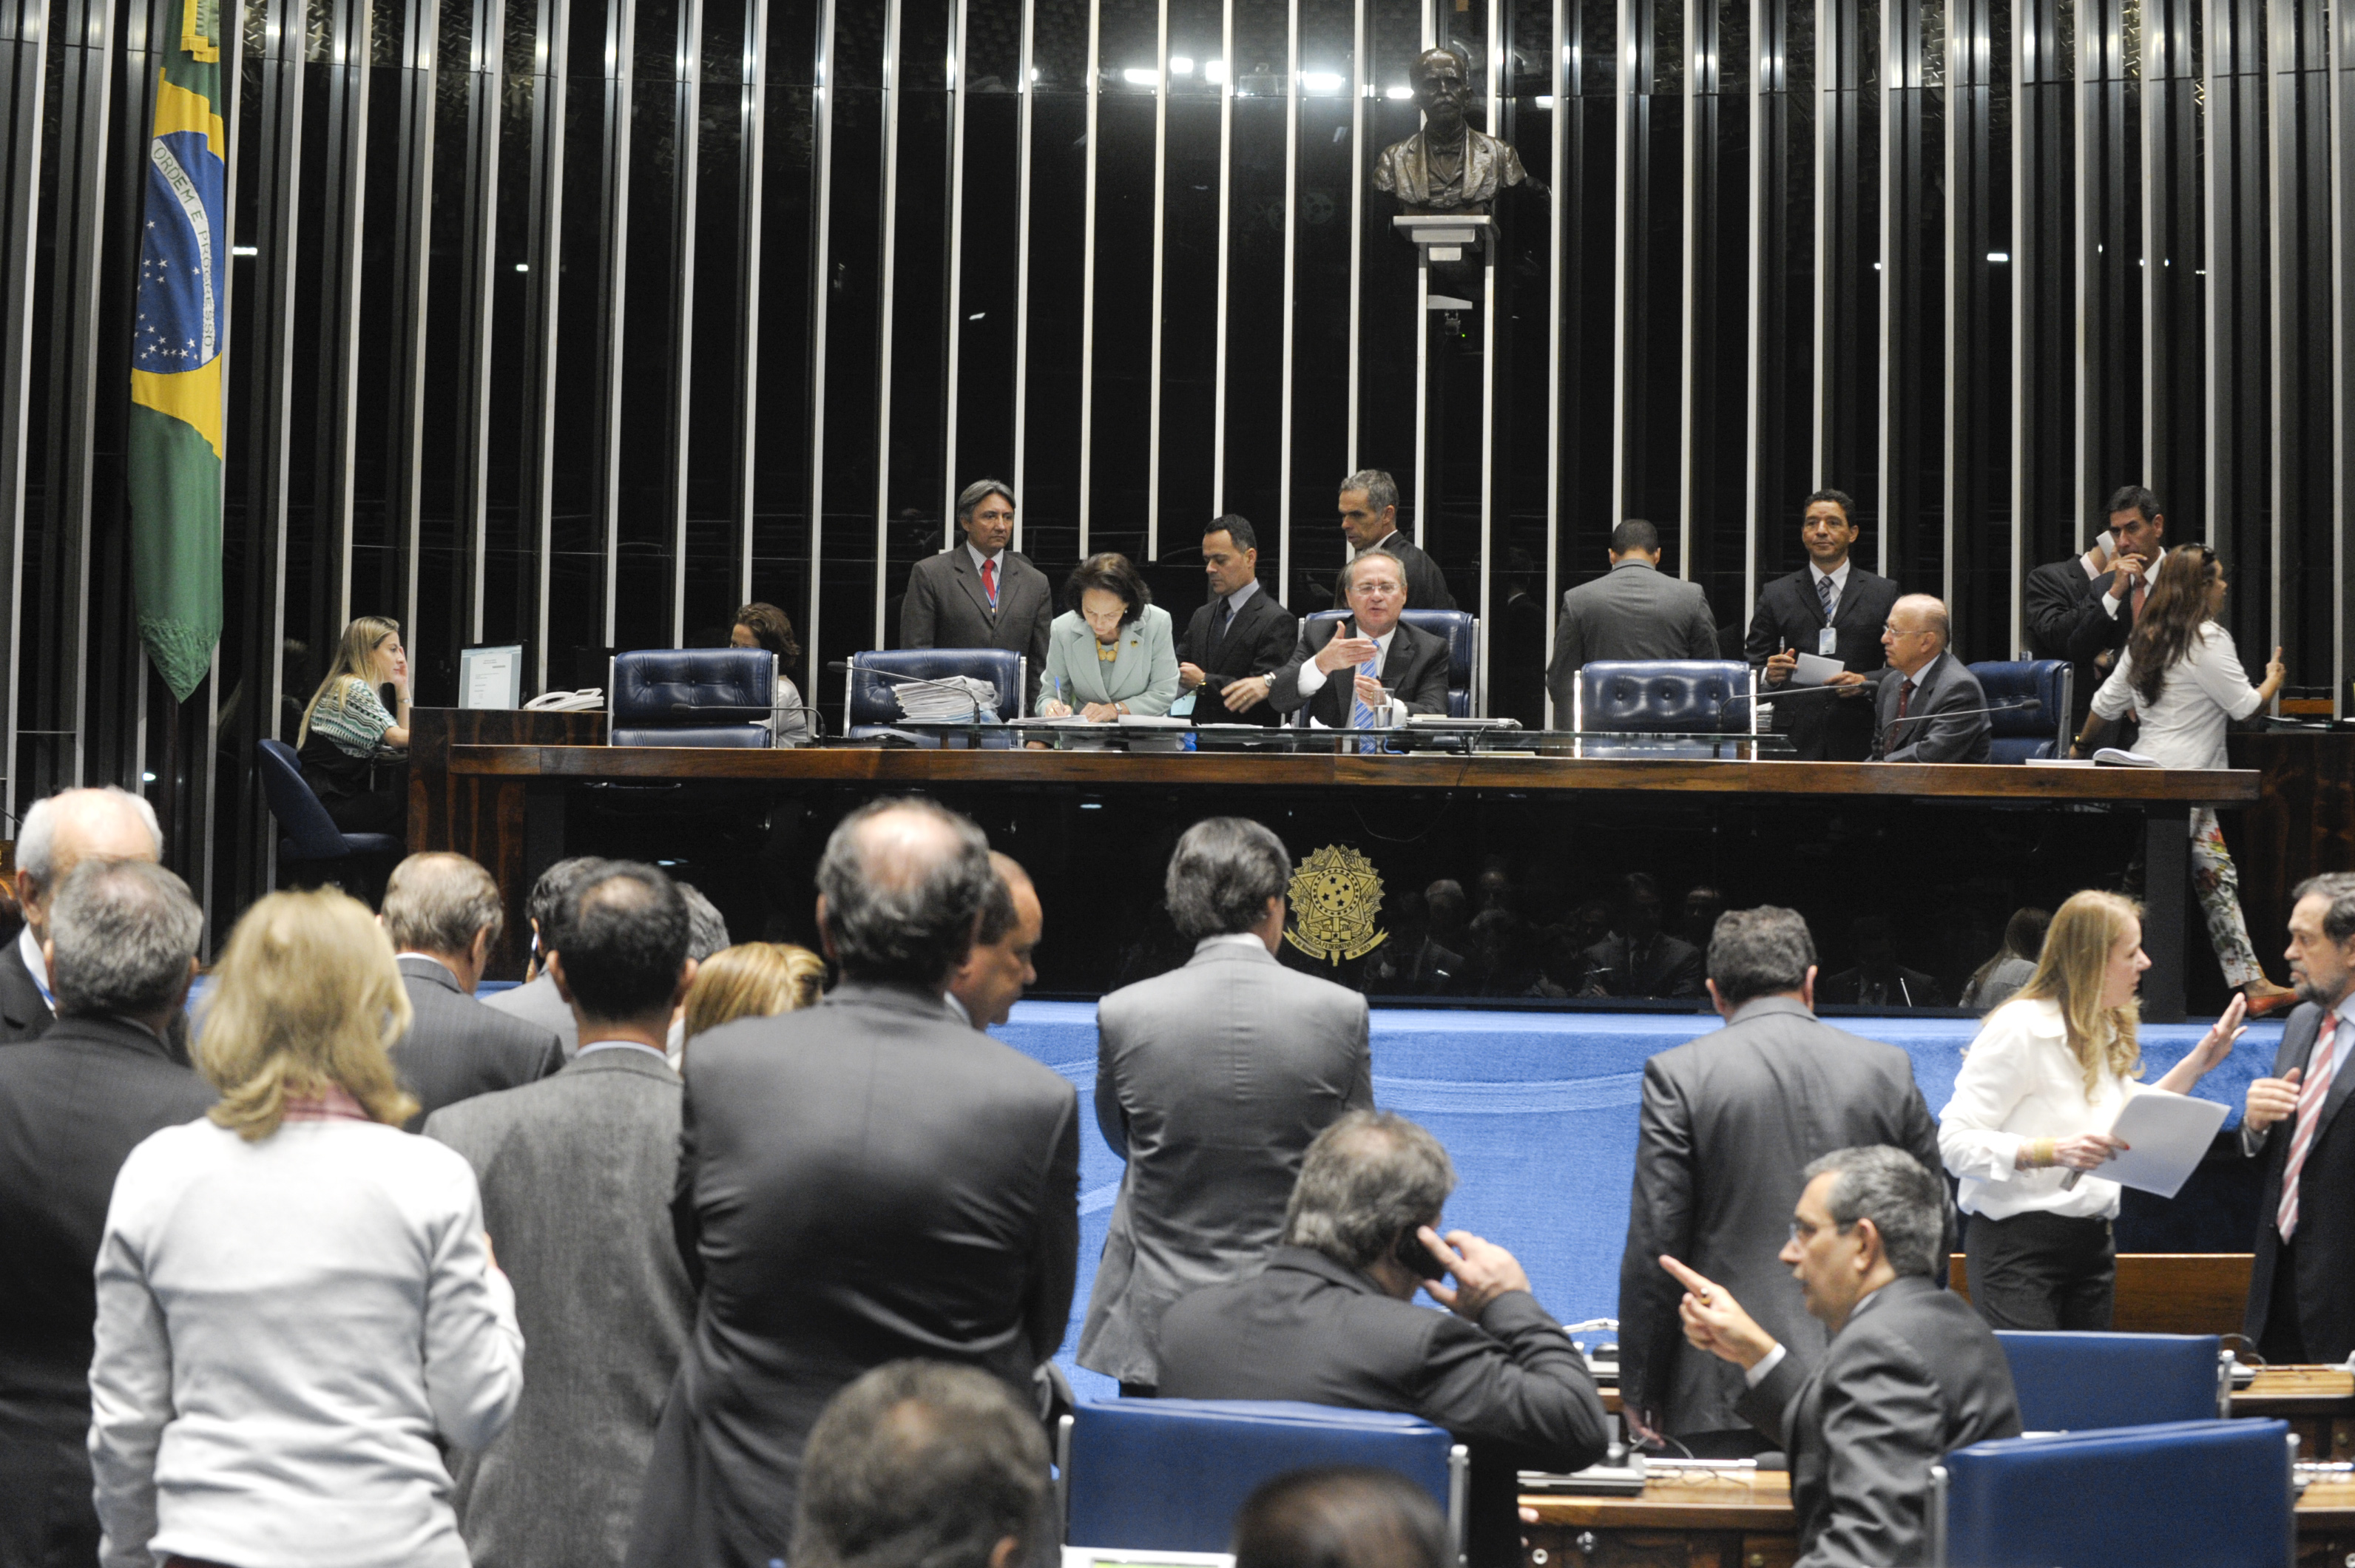 Imagem: Marcos Oliveira/Agência Senado